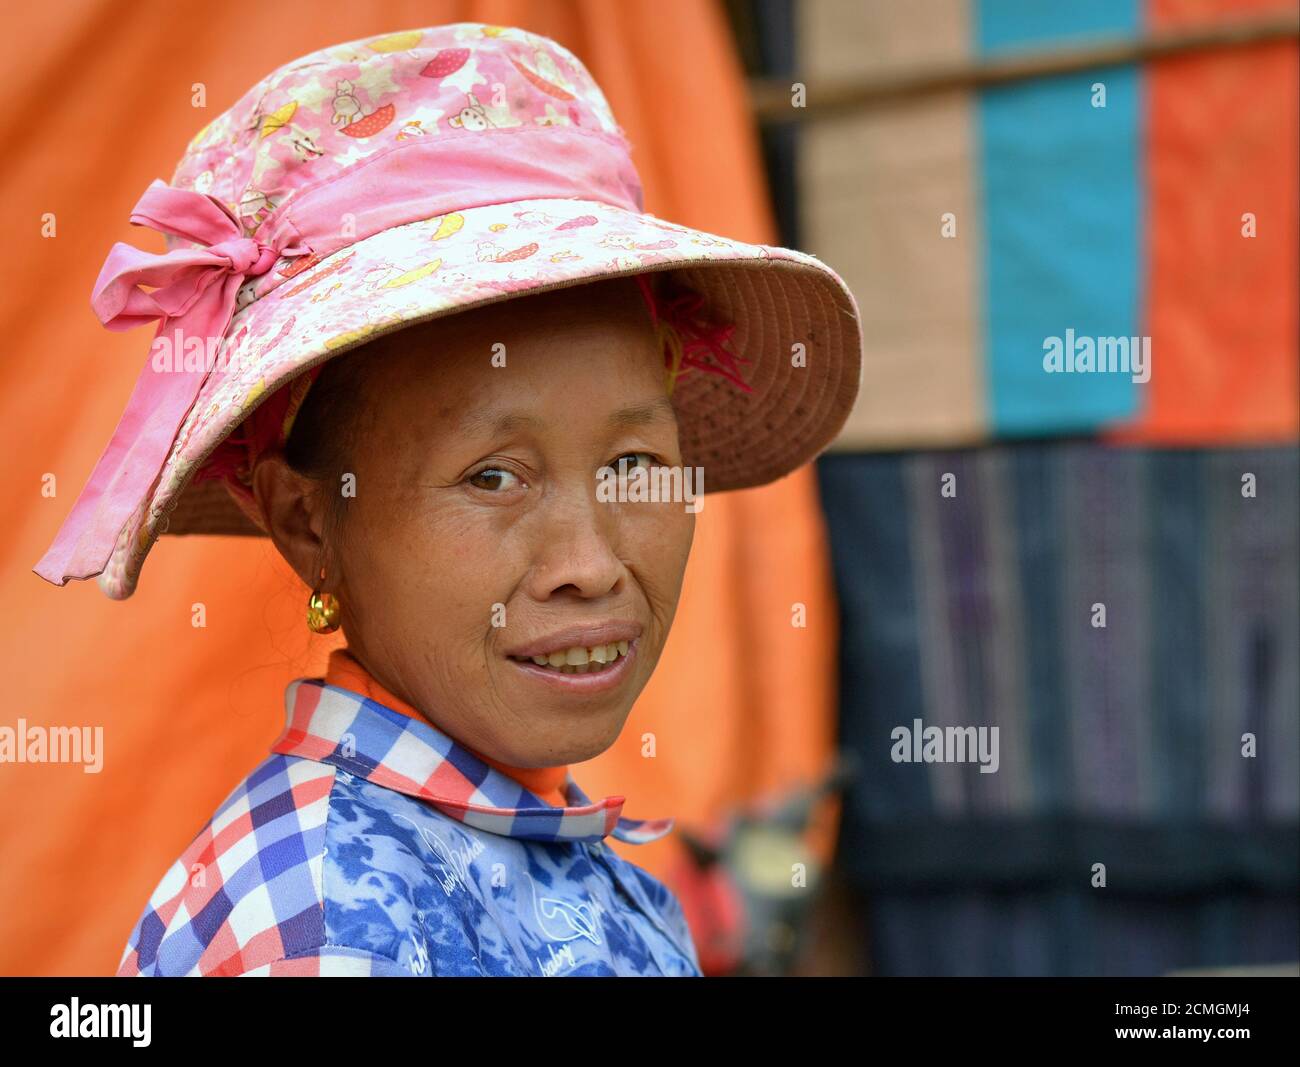 La femme âgée de la tribu des collines de Hmong, une minorité ethnique vietnamienne, porte un chapeau de soleil moderne en rose et sourit pour la caméra. Banque D'Images